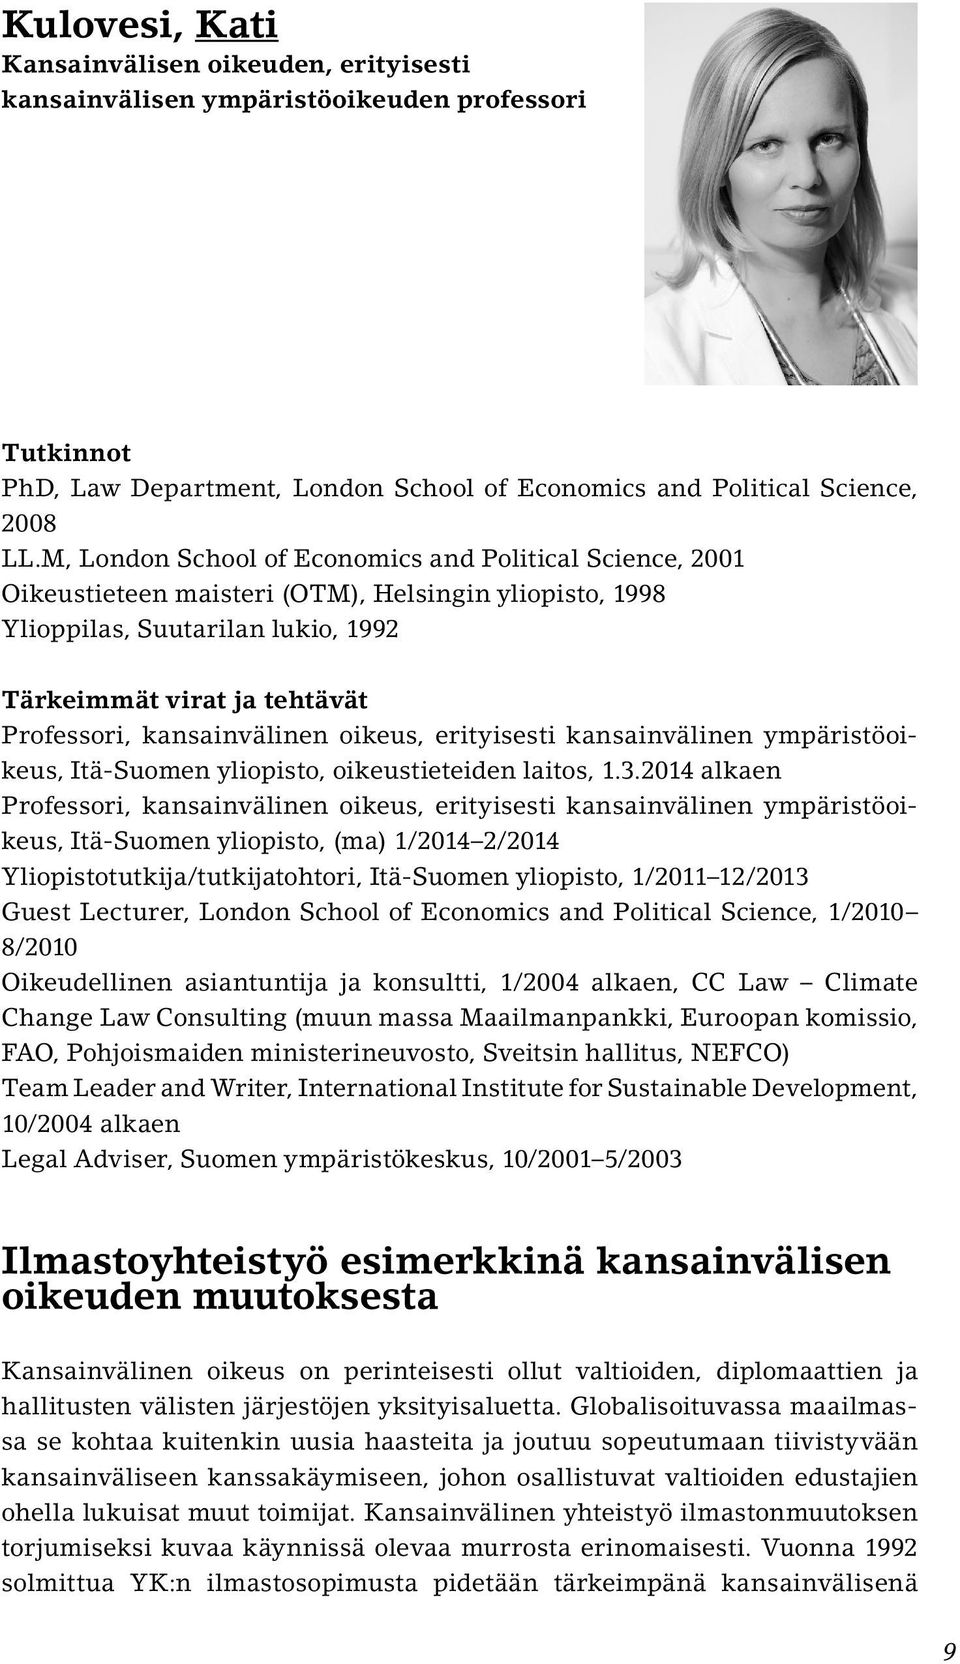 kansainvälinen oikeus, erityisesti kansainvälinen ympäristöoikeus, Itä-Suomen yliopisto, oikeustieteiden laitos, 1.3.